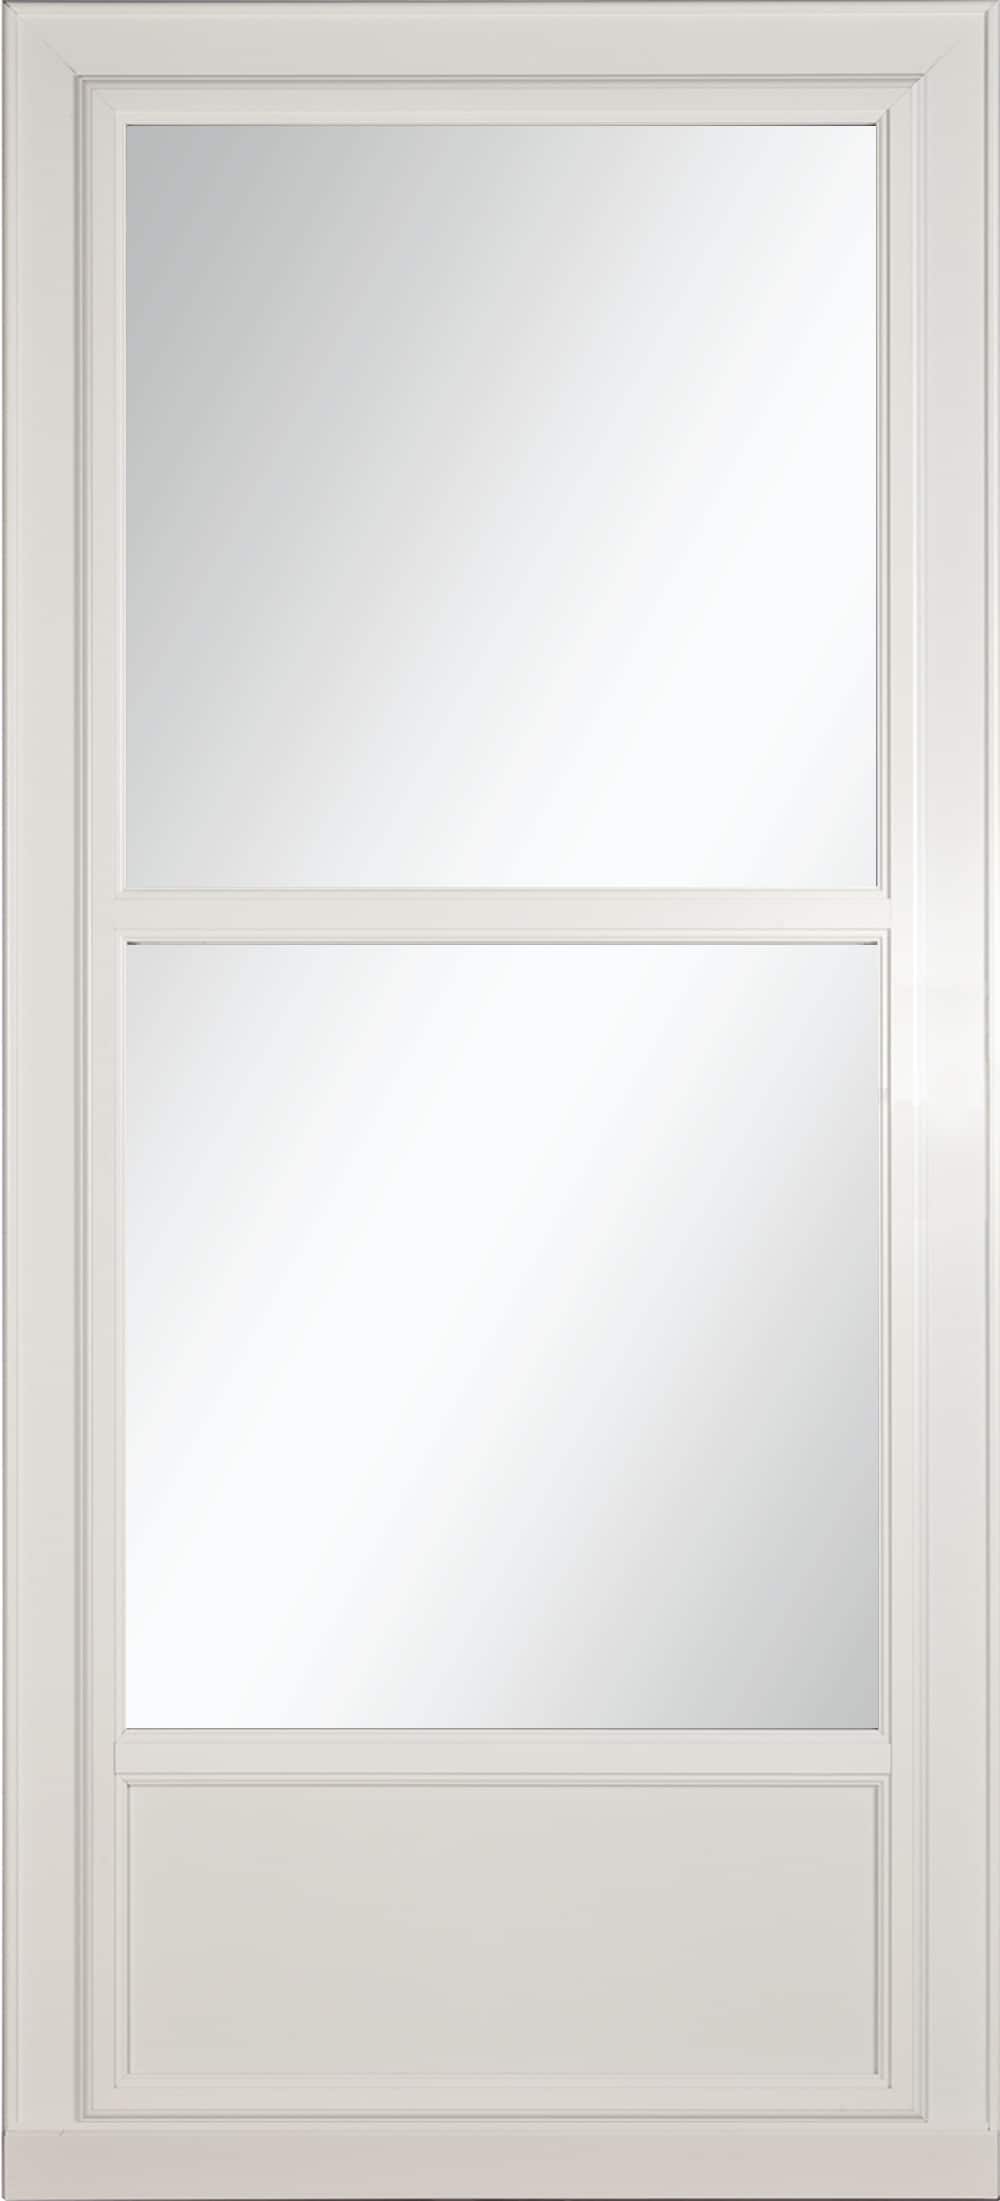 Tradewinds Selection 32-in x 81-in White Mid-view Retractable Screen Aluminum Storm Door | - LARSON 14606031